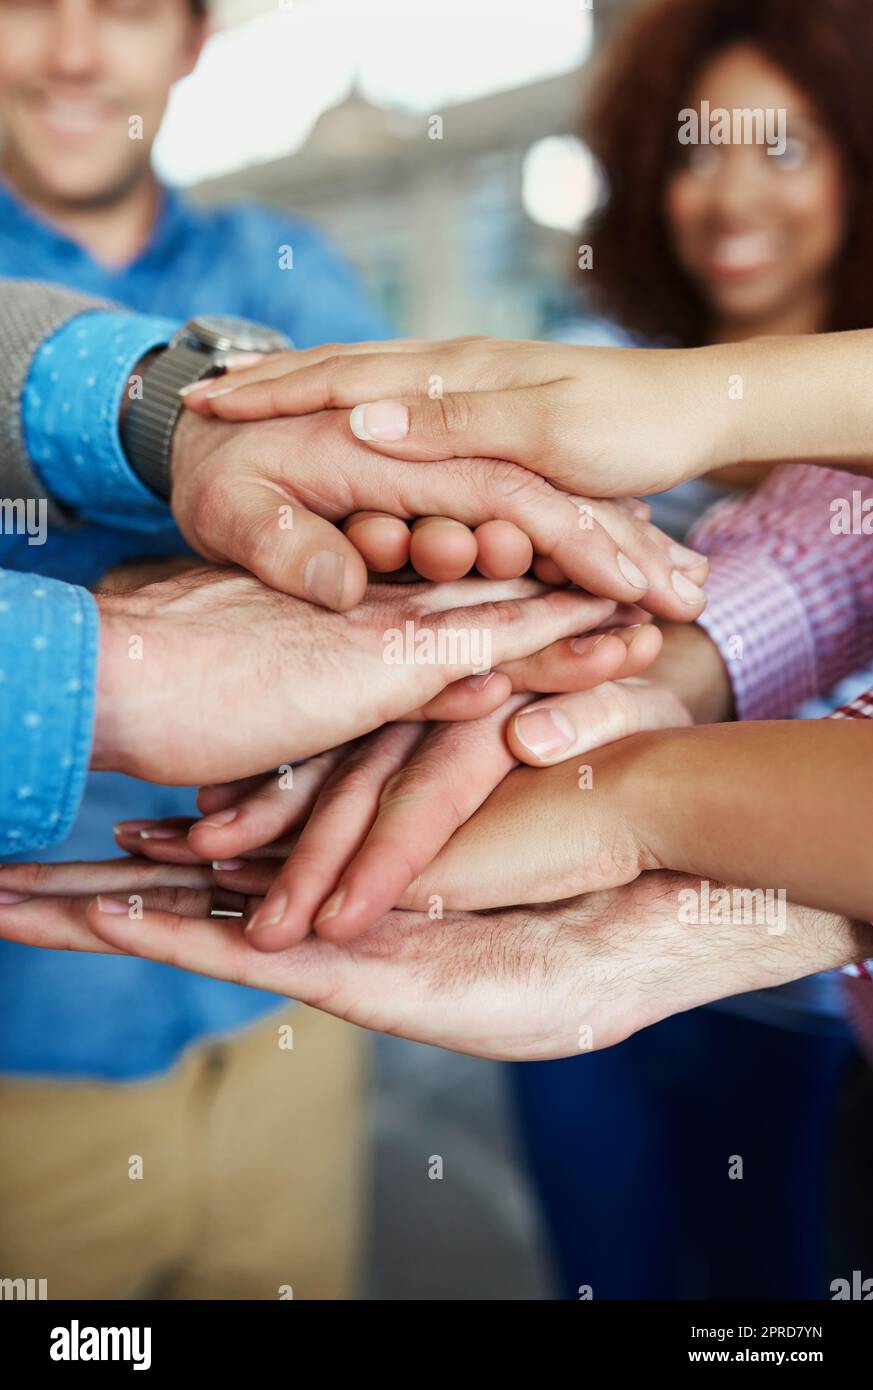 Die Hände der Geschäftsleute sind gestapelt und zeigen Einheit, Teamarbeit und Geste der Zusammenarbeit, um ein Ziel zu erreichen. Zusammenstellung von Mitarbeitern in Unternehmen, Teams oder Communities, die sich beteiligen, zusammenarbeiten und zusammenstehen Stockfoto